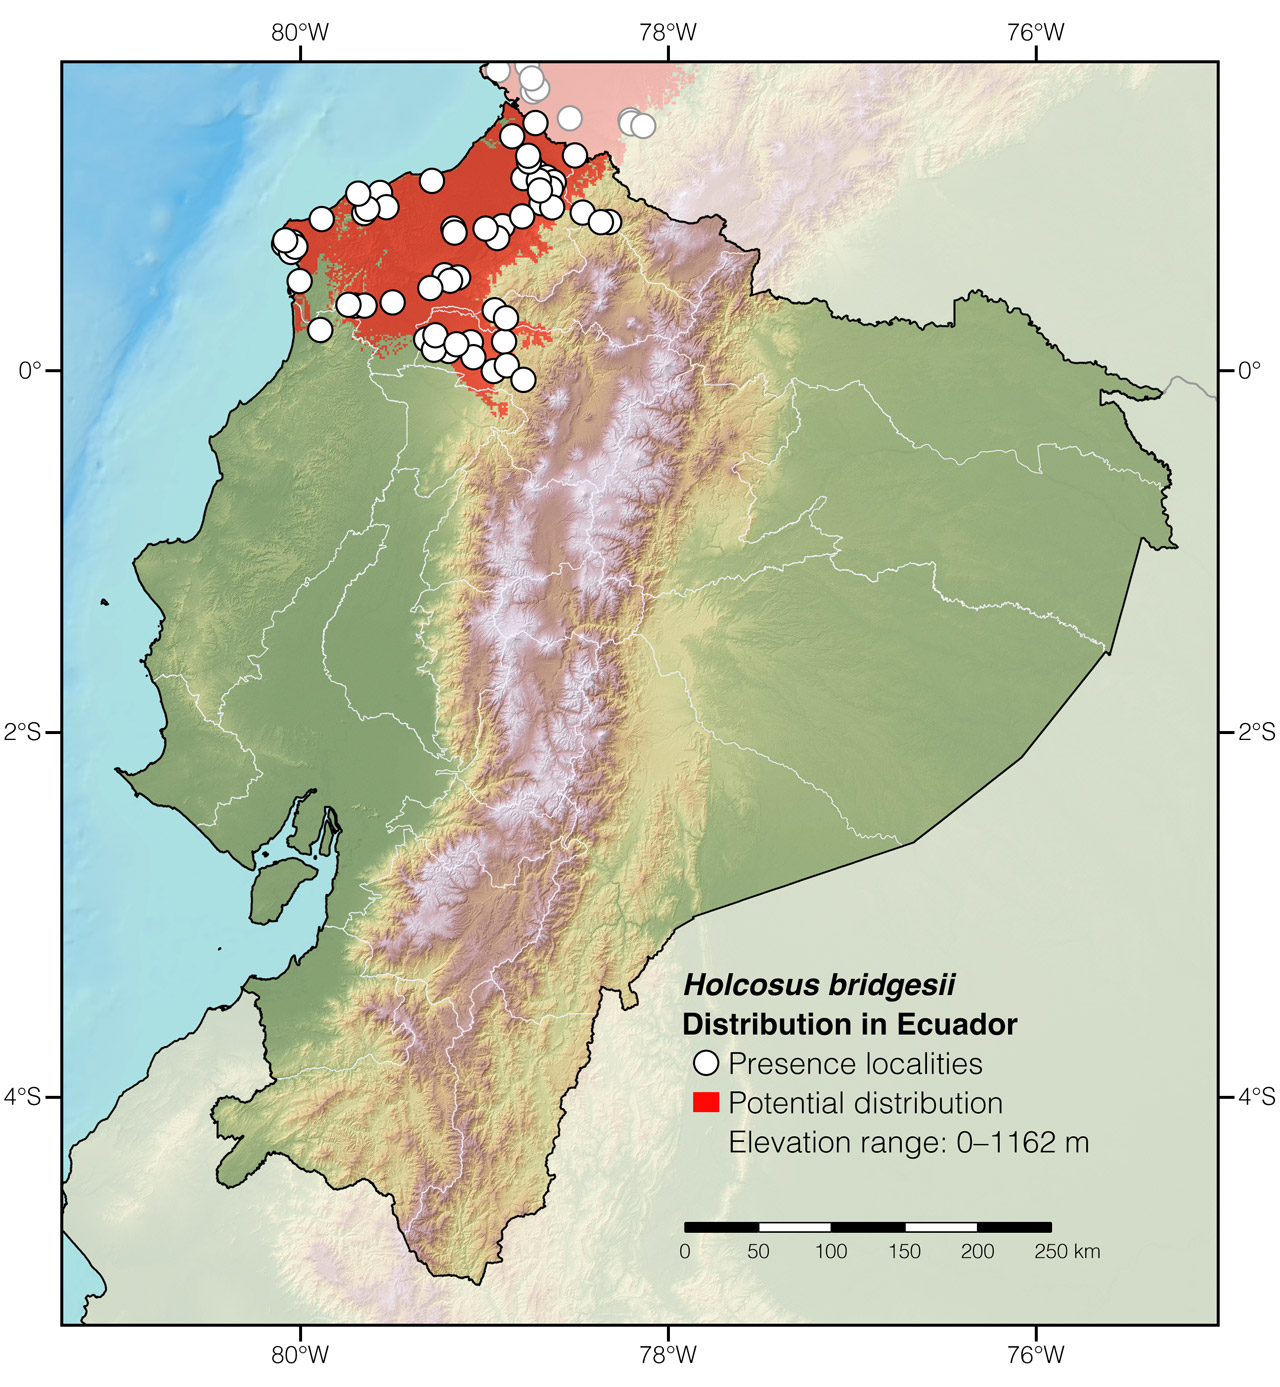 Distribution of Holcosus bridgesii in Ecuador